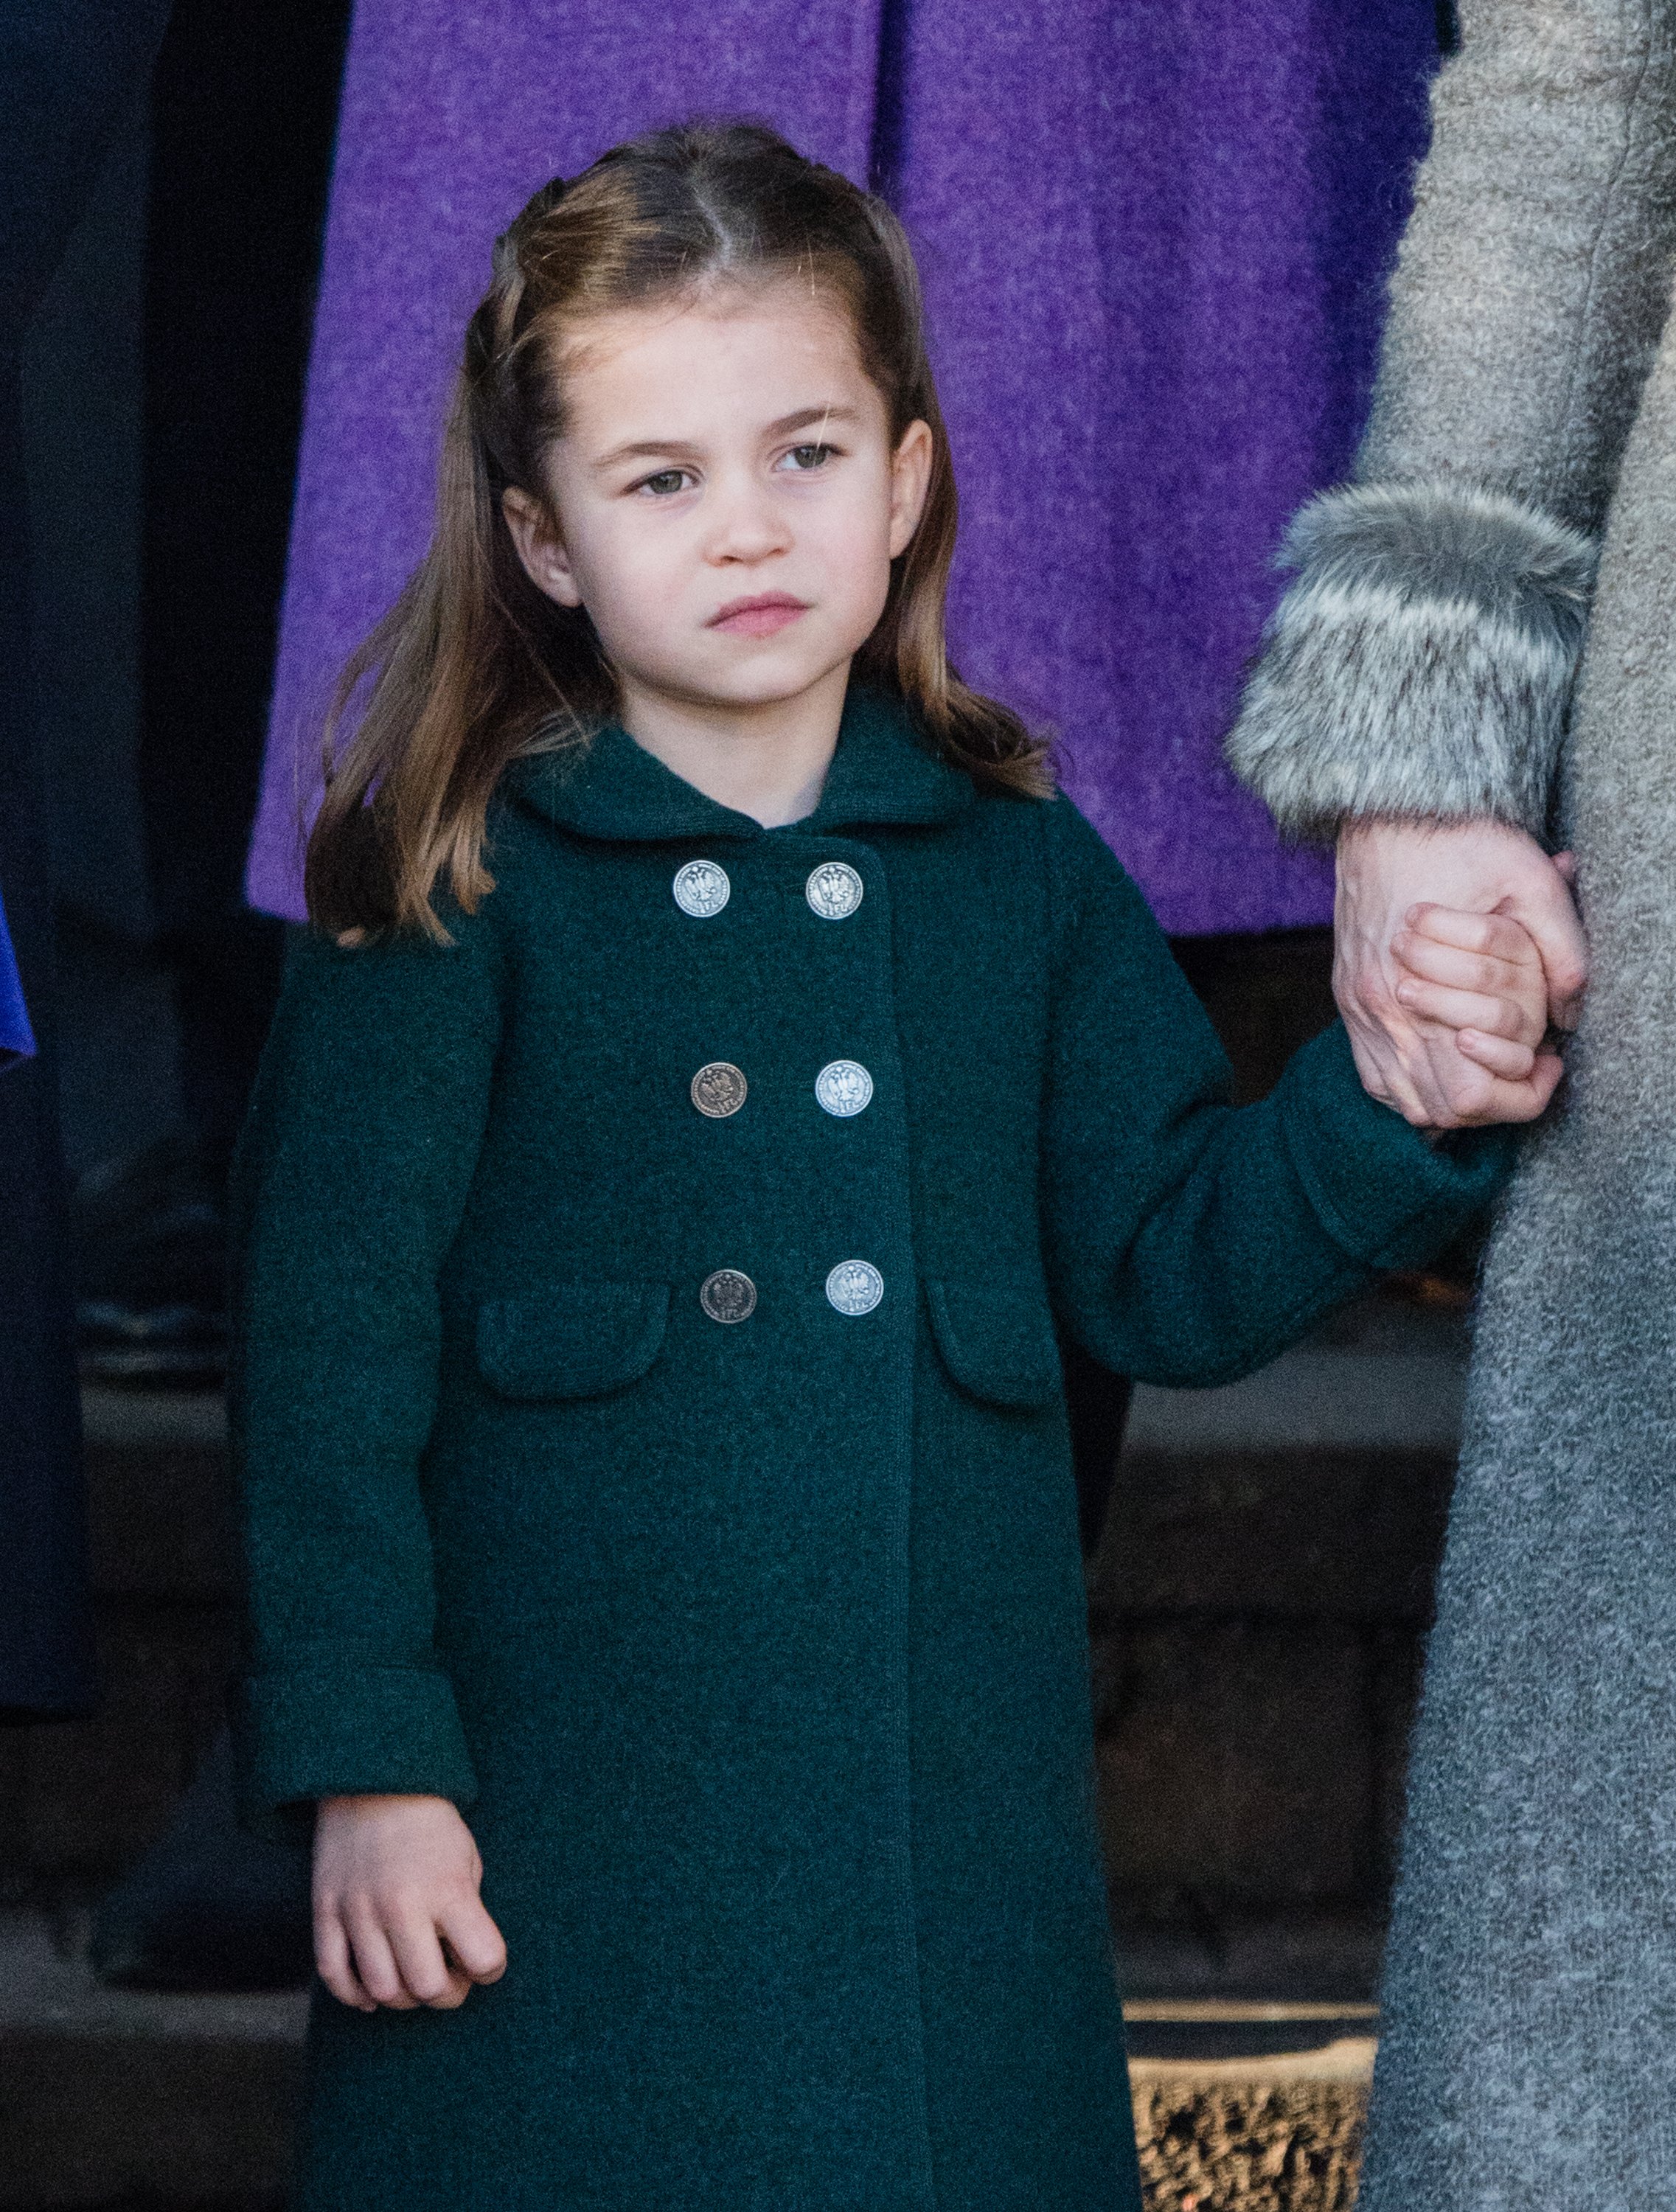 La princesa Charlotte en el servicio religioso del día de Navidad en la Iglesia de Santa María Magdalena, el 25 de diciembre de 2019. | Foto: Getty Images